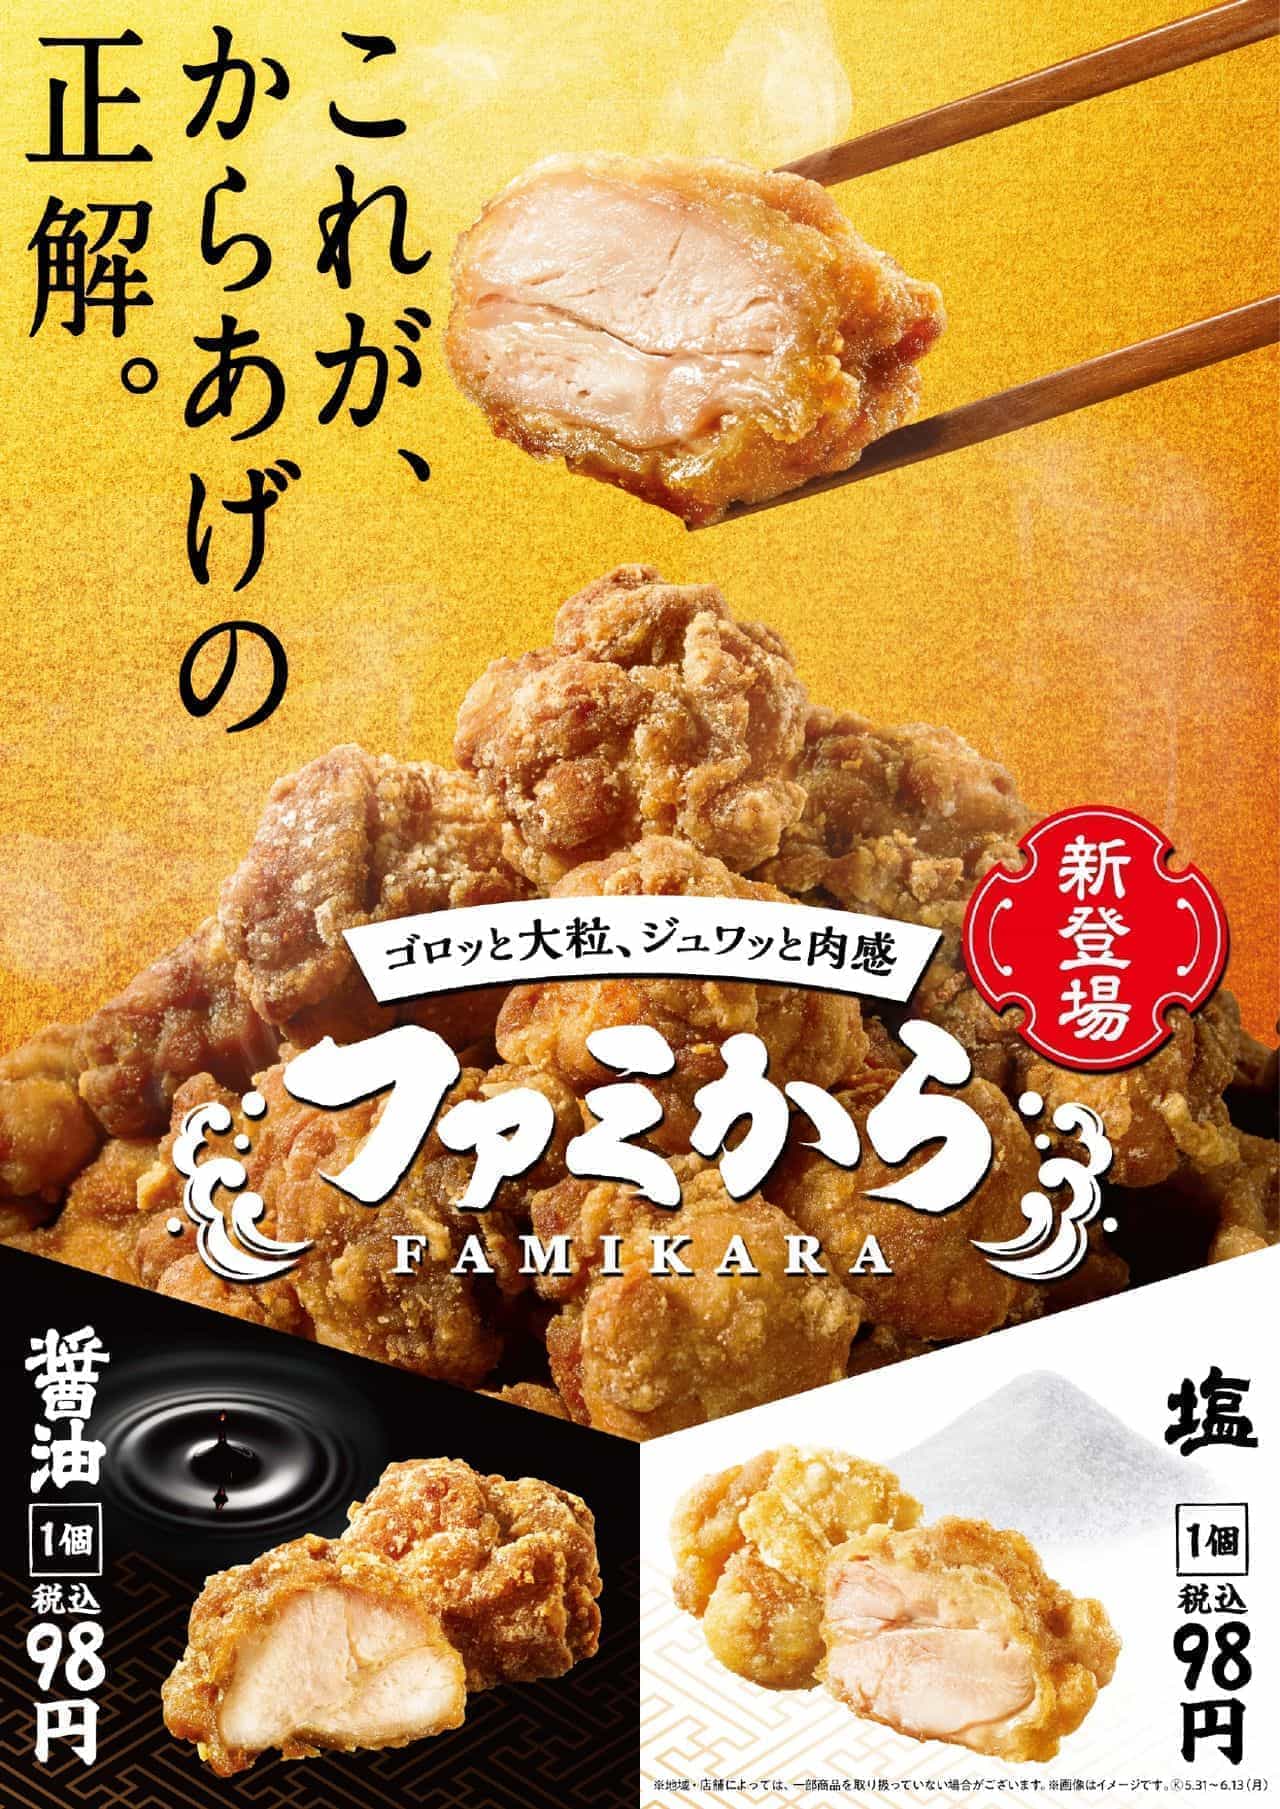 FamilyMart "Famikara (soy sauce)" "Famikara (salt)